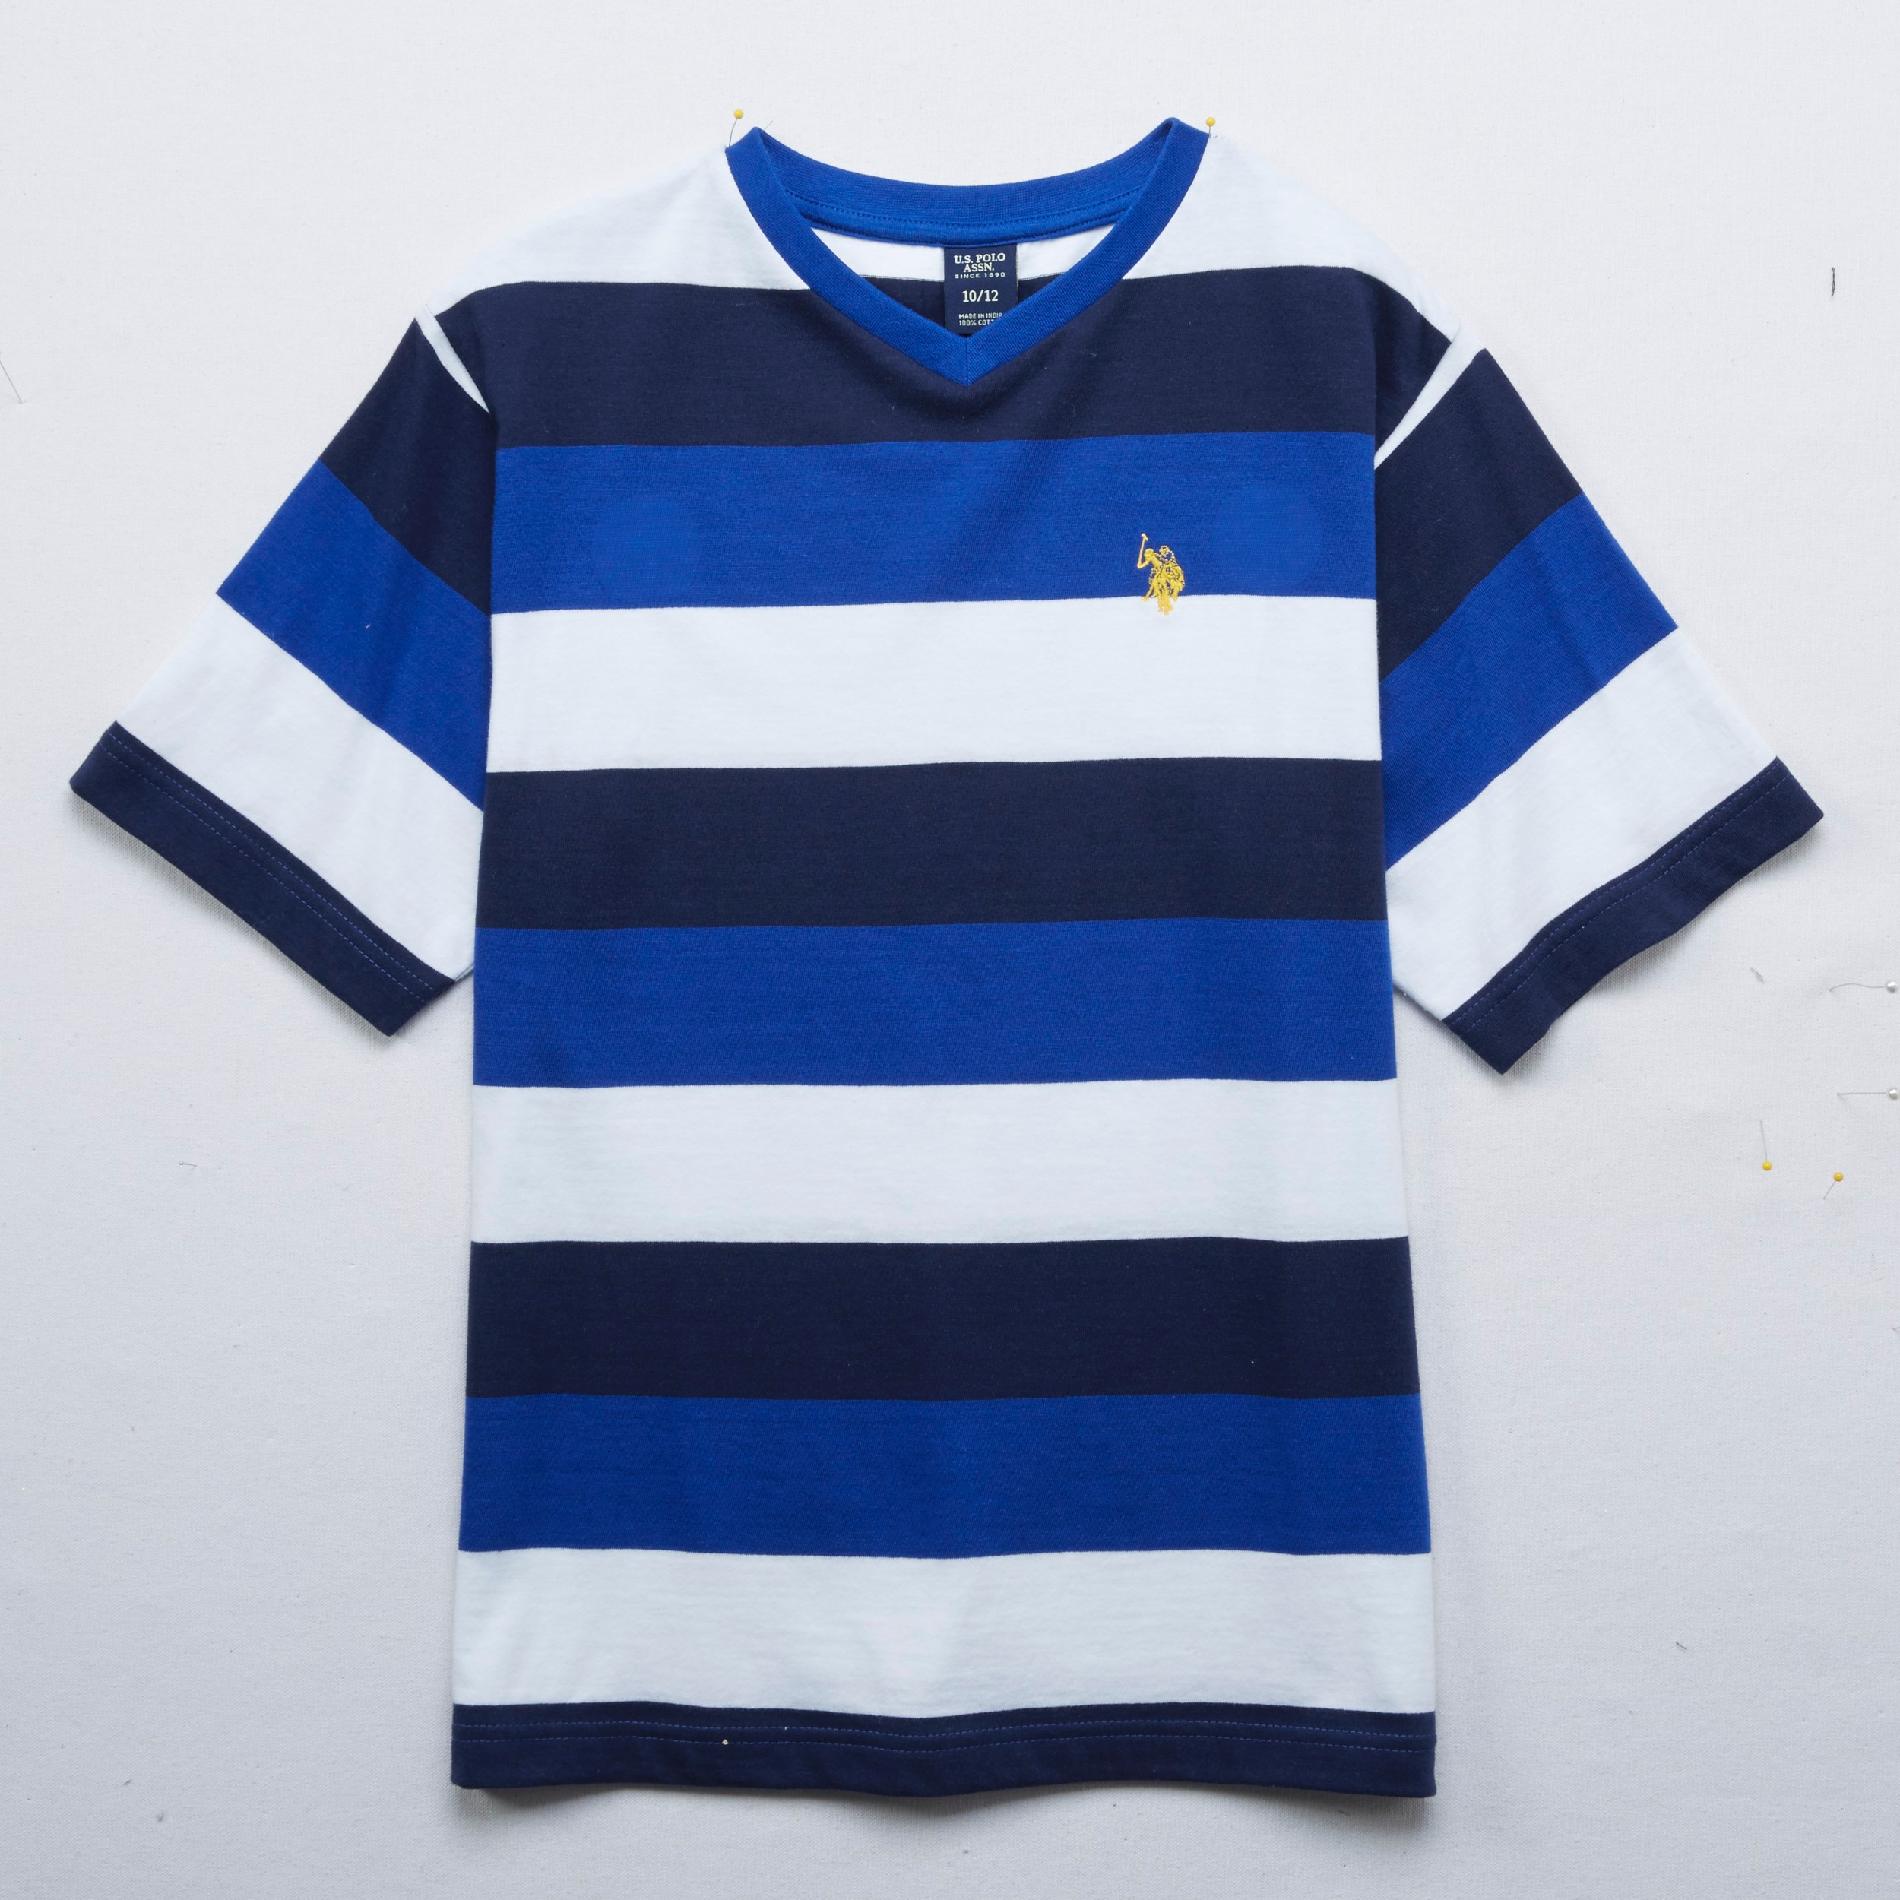 U.S. Polo Assn. Boy's Jersey T-Shirt - Rugby Stripe